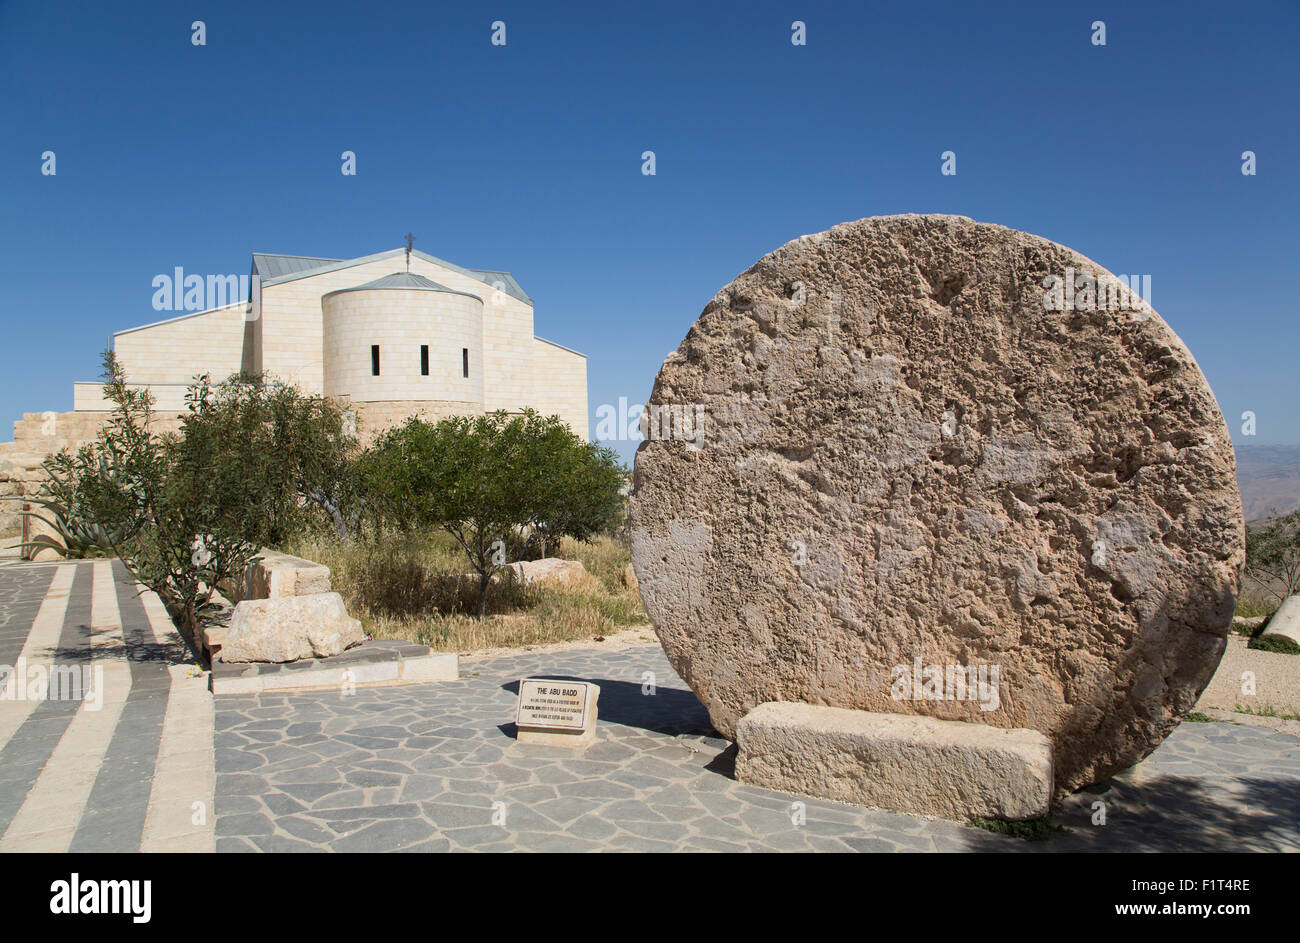 Abu Badd, un rolling stone utilisée pour fortifier une porte, Moïse Memorial Church à l'arrière-plan, le Mont Nebo, Jordanie, Moyen-Orient Banque D'Images